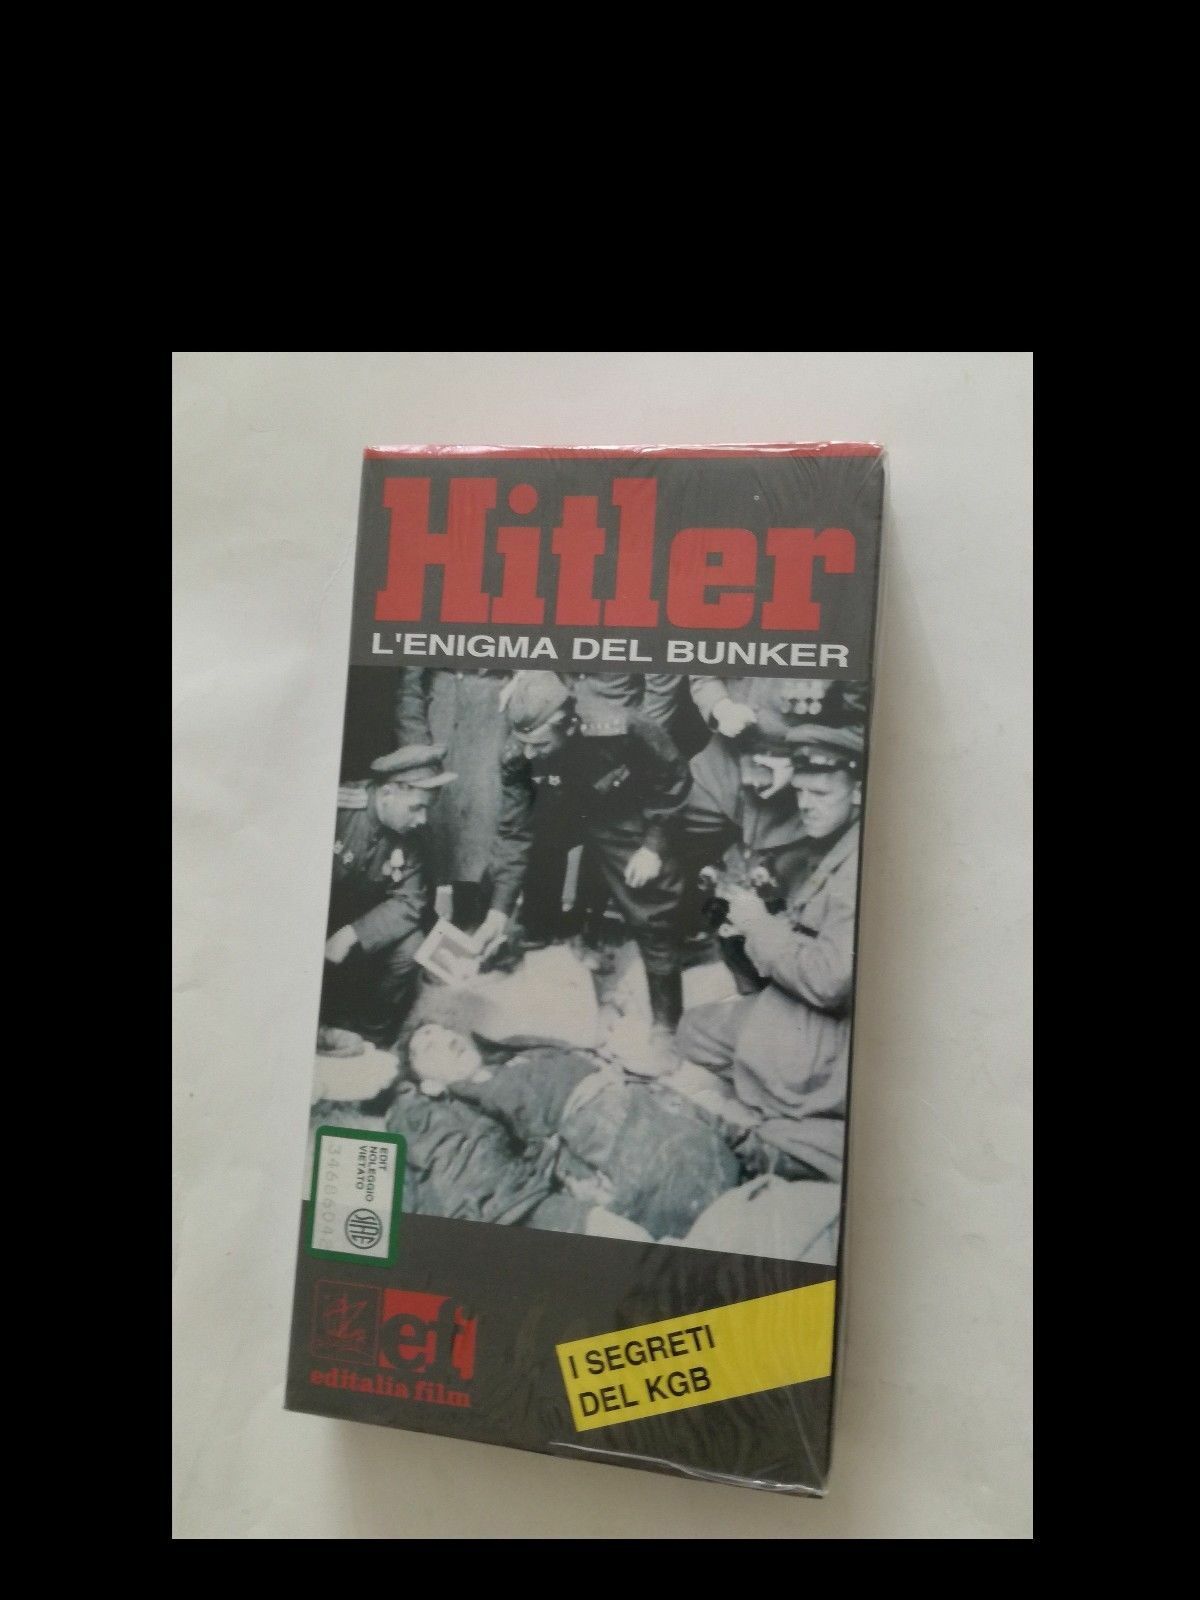 Hitler l' enigma del bunker - Vhs -1995 - Editalia film - F